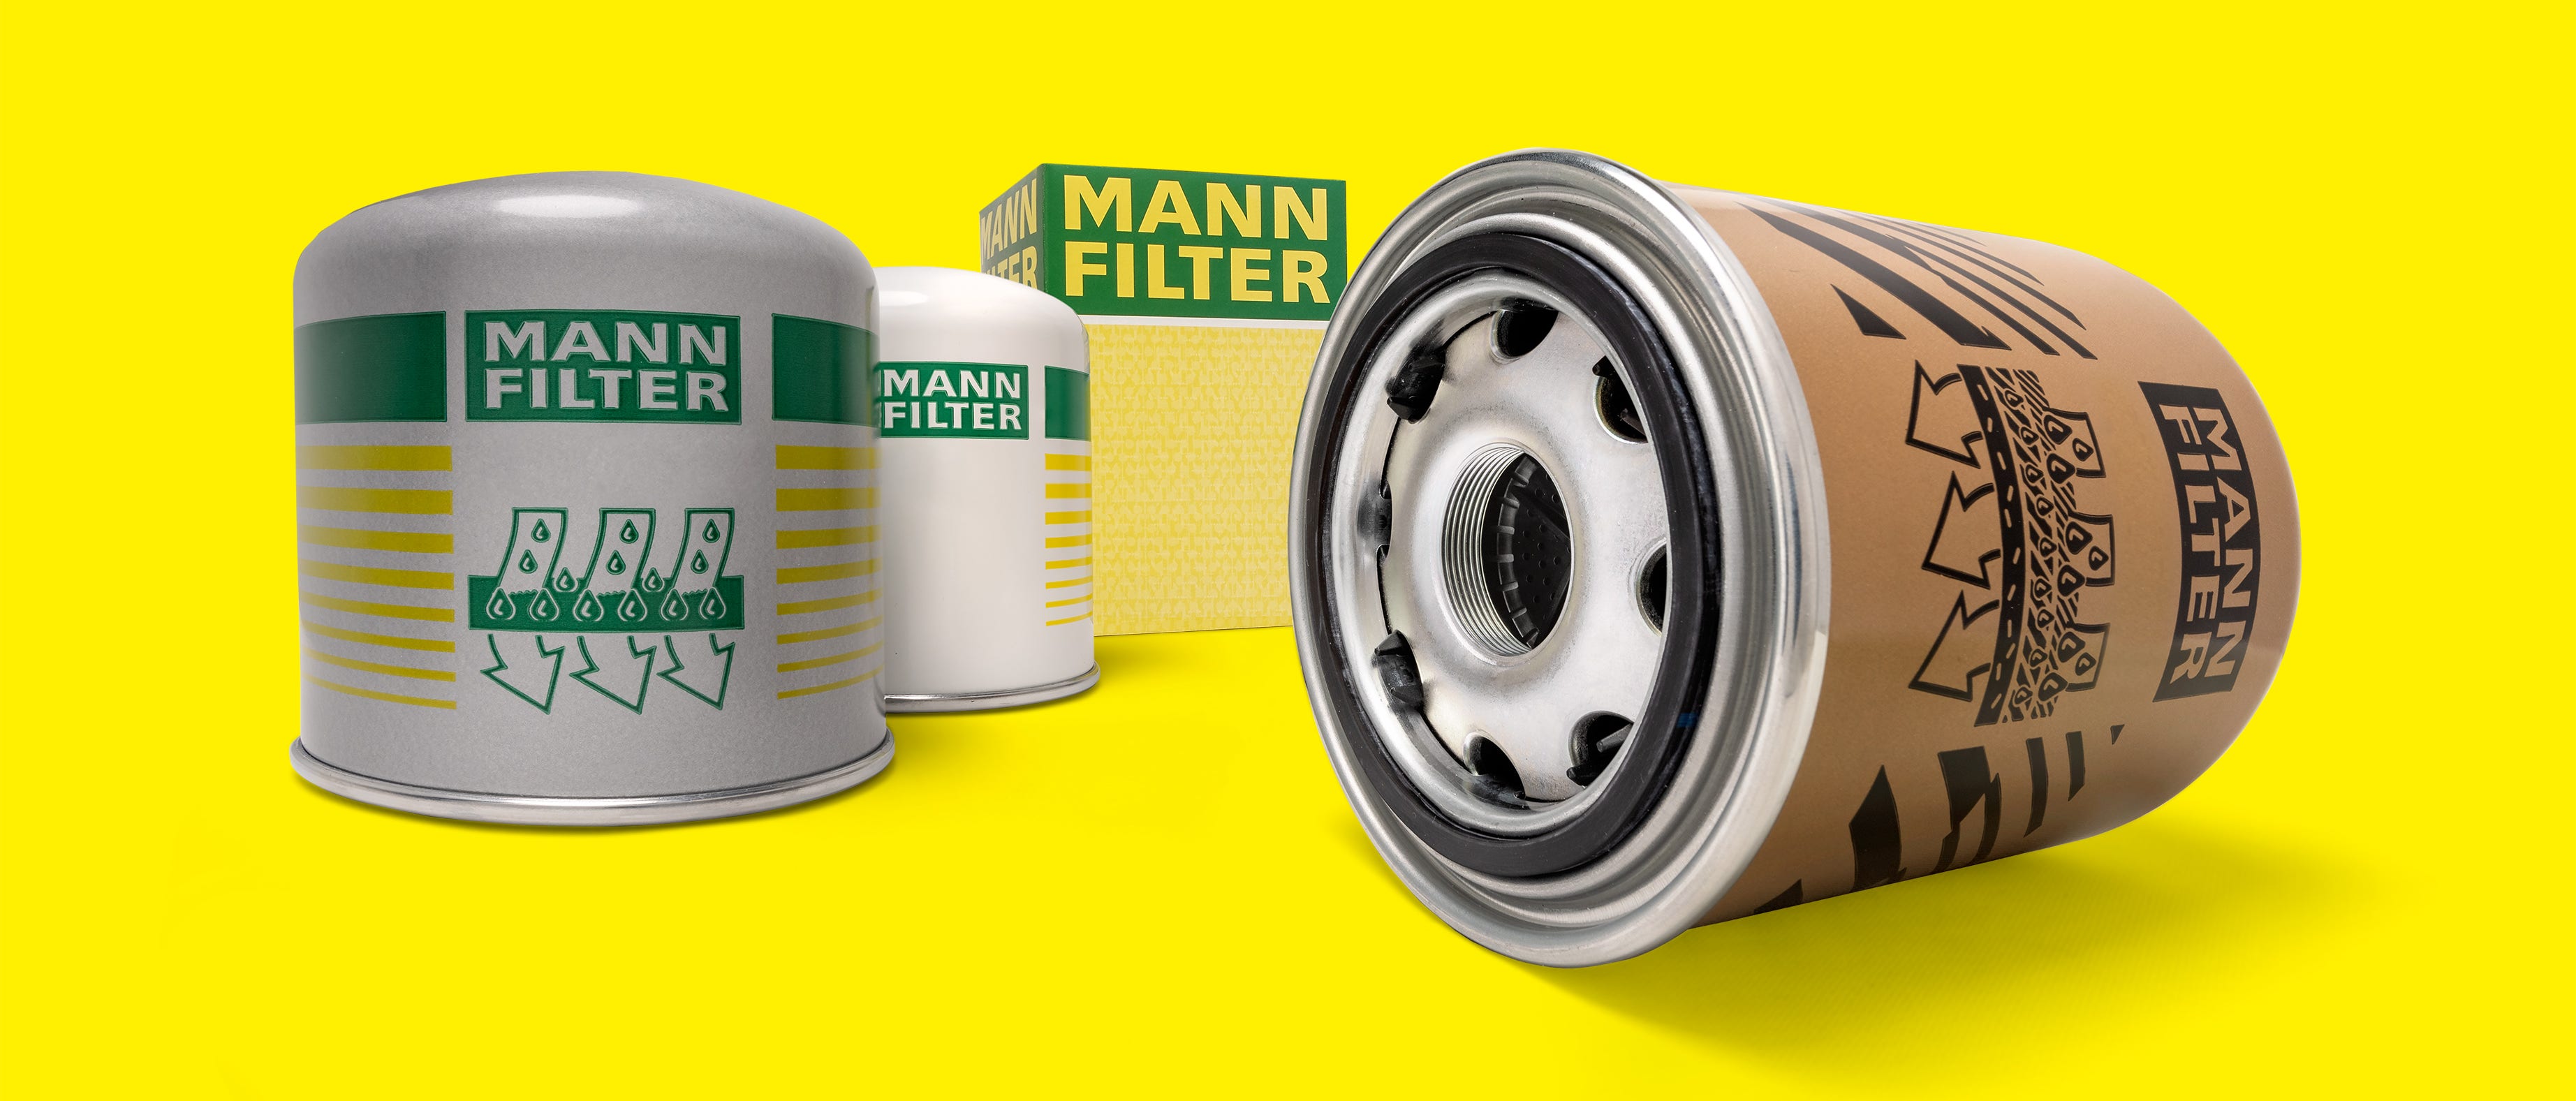 Cartucce MANN-FILTER per l'essiccazione dell'aria per la protezione dei sistemi frenanti pneumatici nei veicoli commerciali